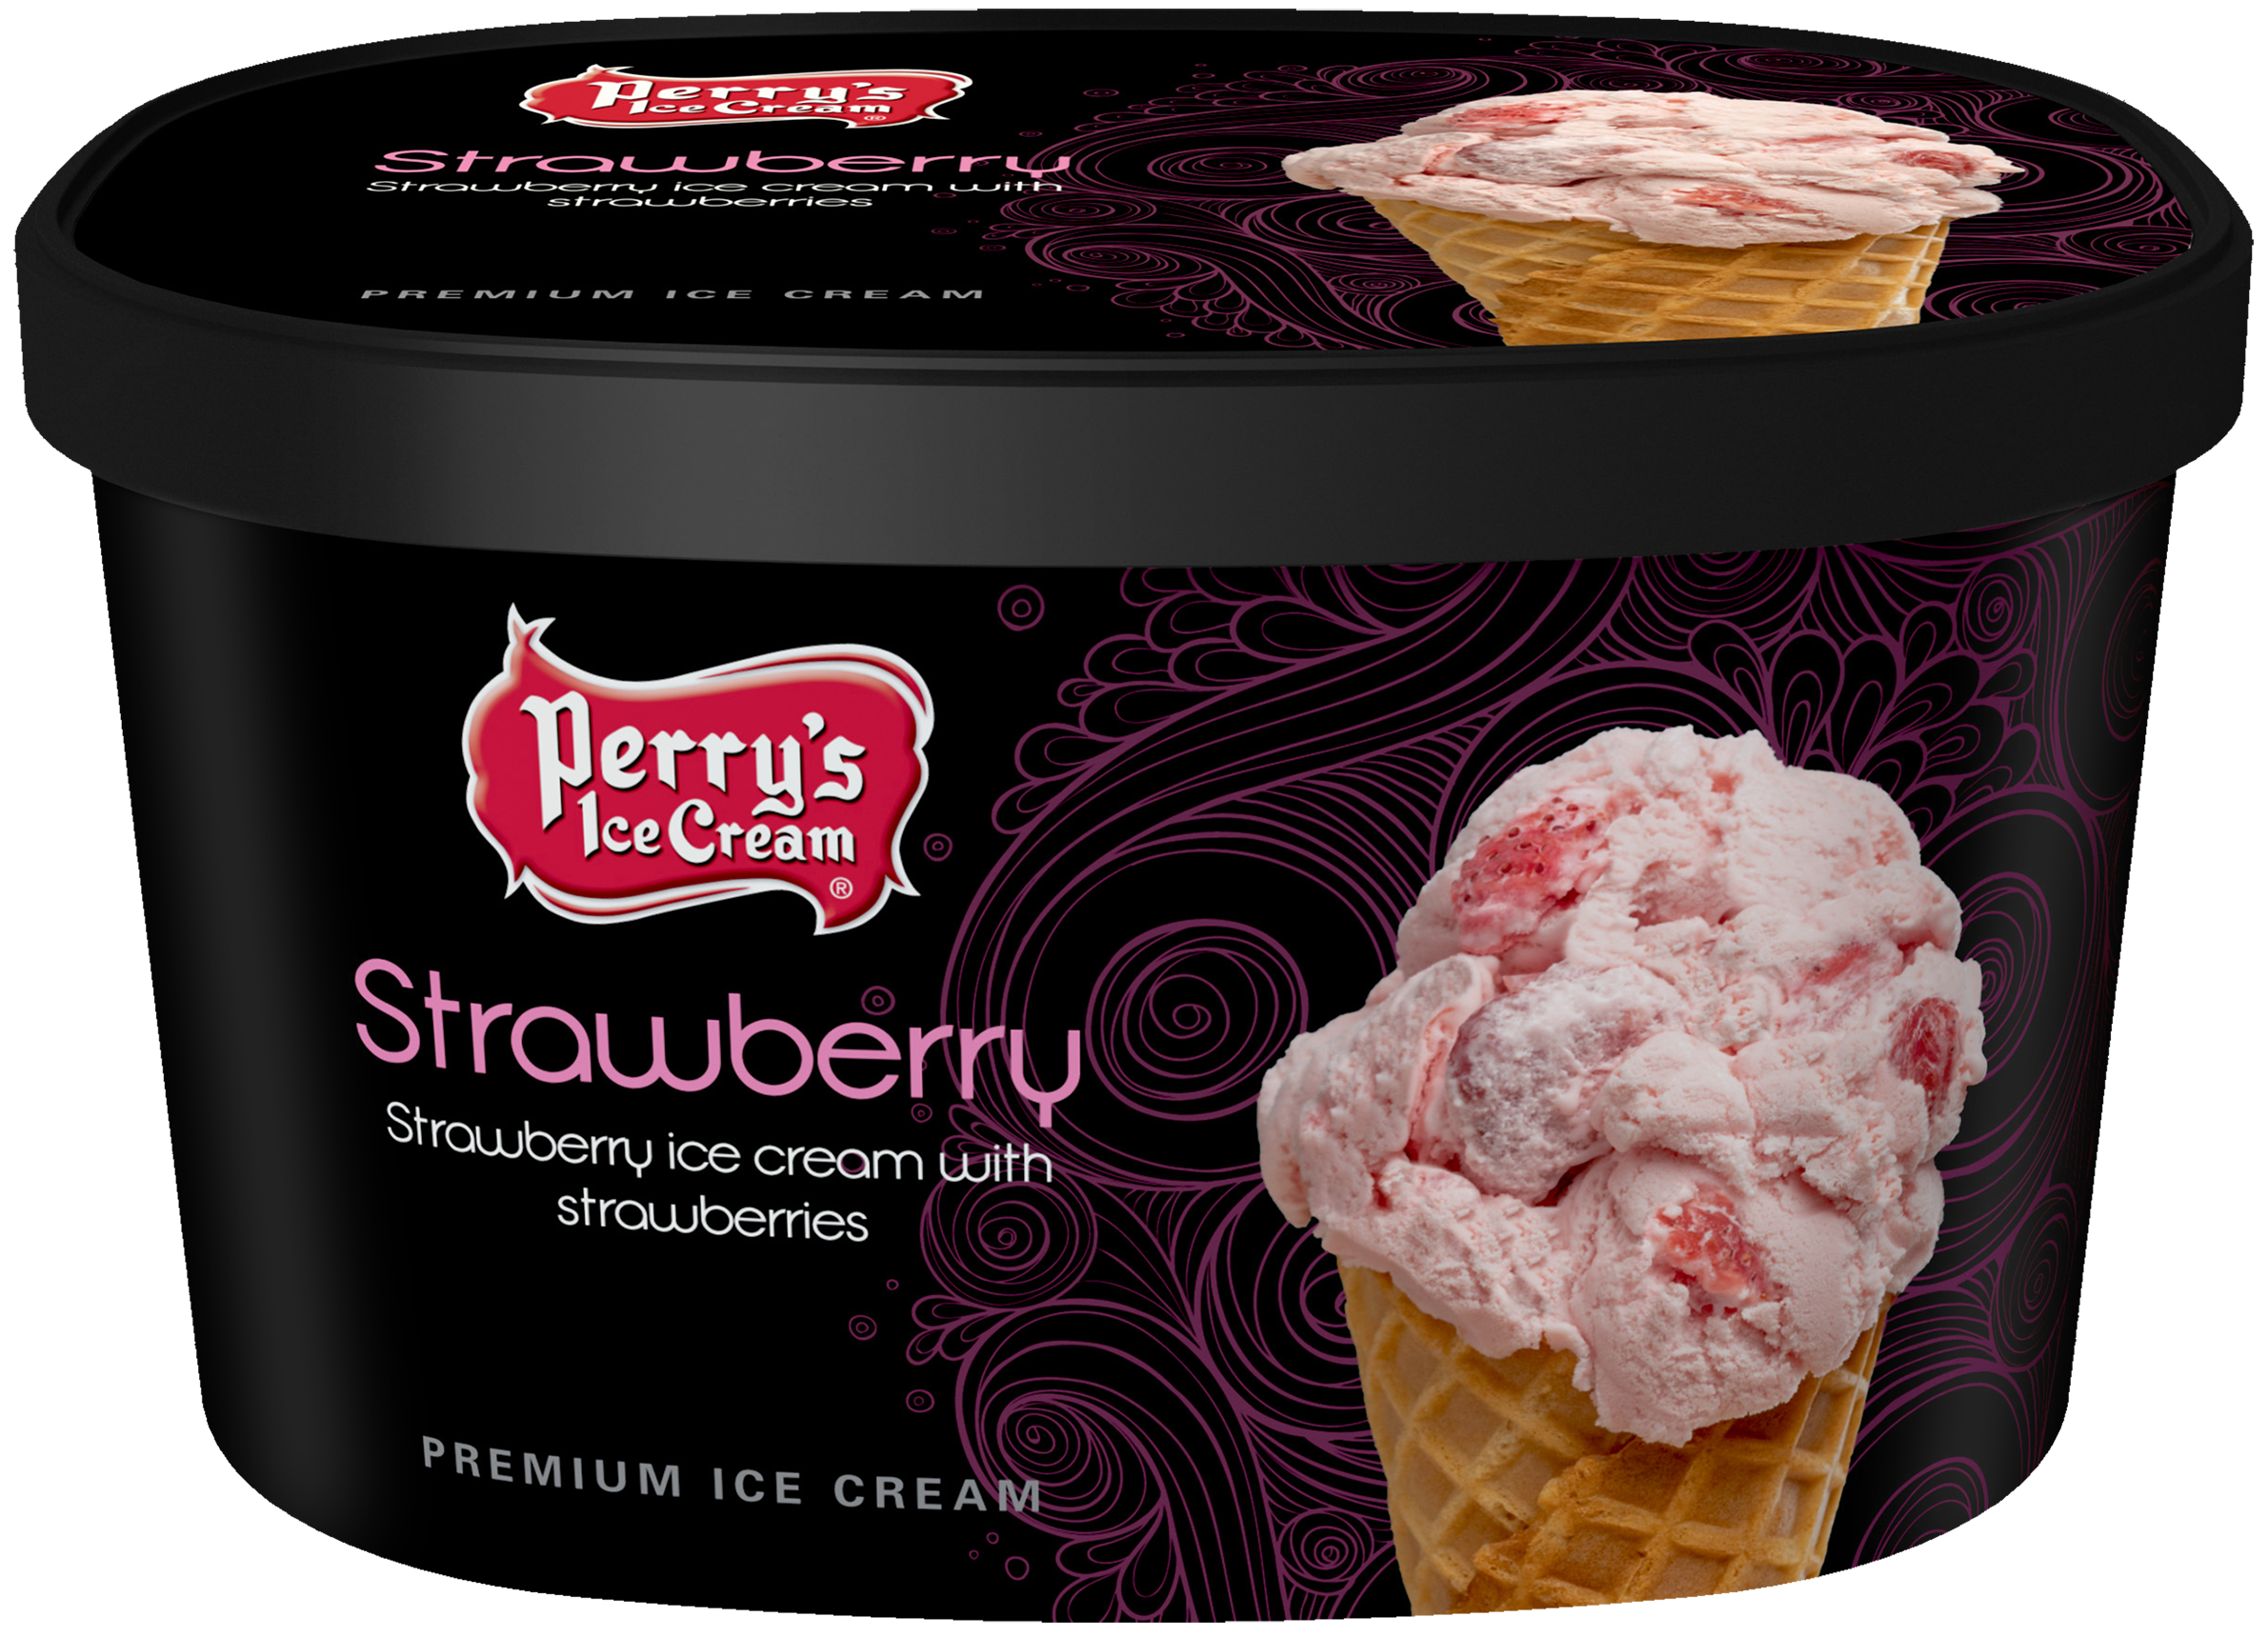 Perry's Strawberry ice cream